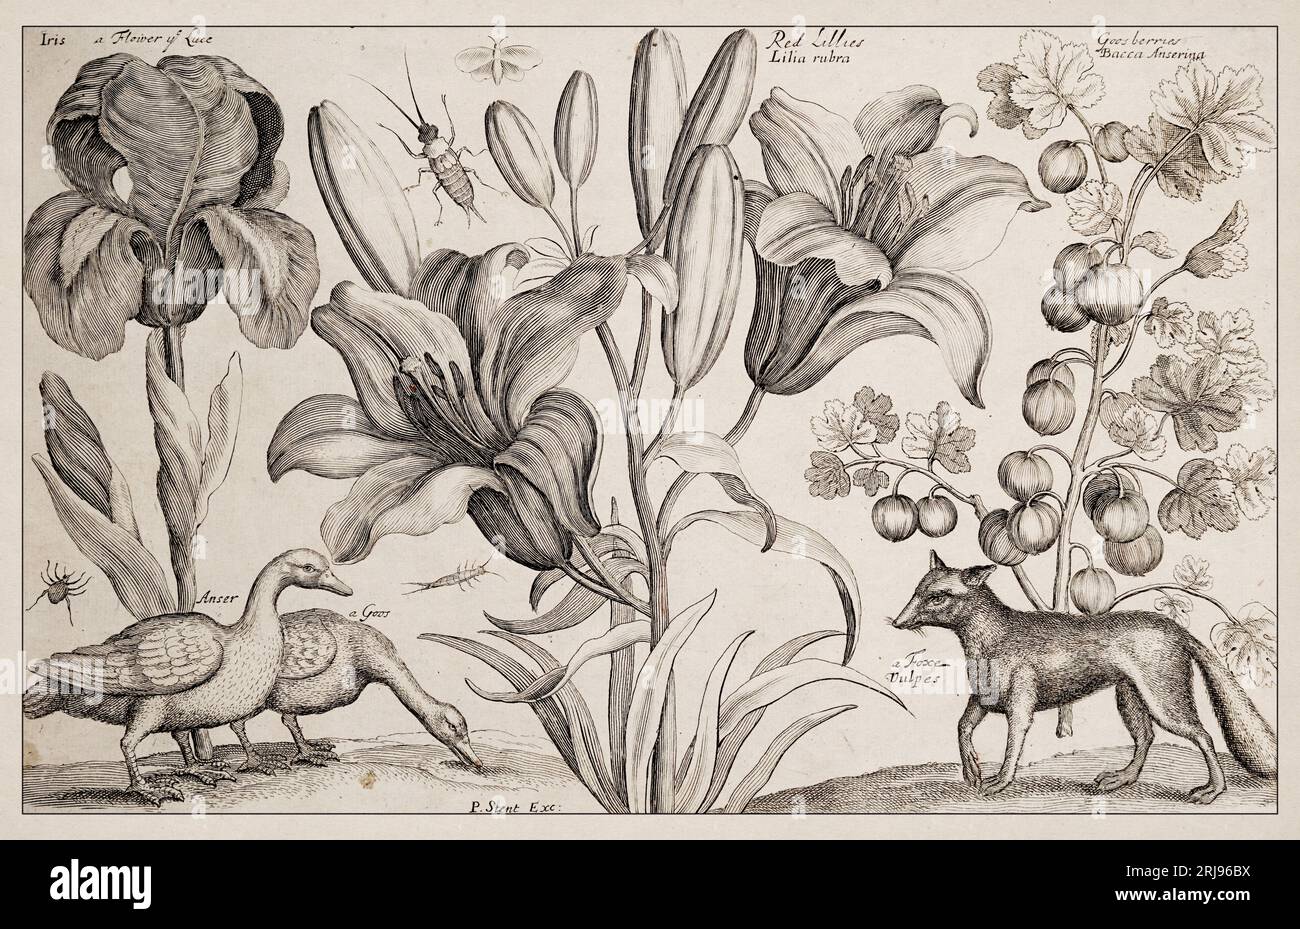 1663 Etching von Wenceslaus Hollar. Exquisite antike Darstellung zoologischer und botanischer Motive, detailliert vor Sepia-Hintergrund. Goos Stockfoto